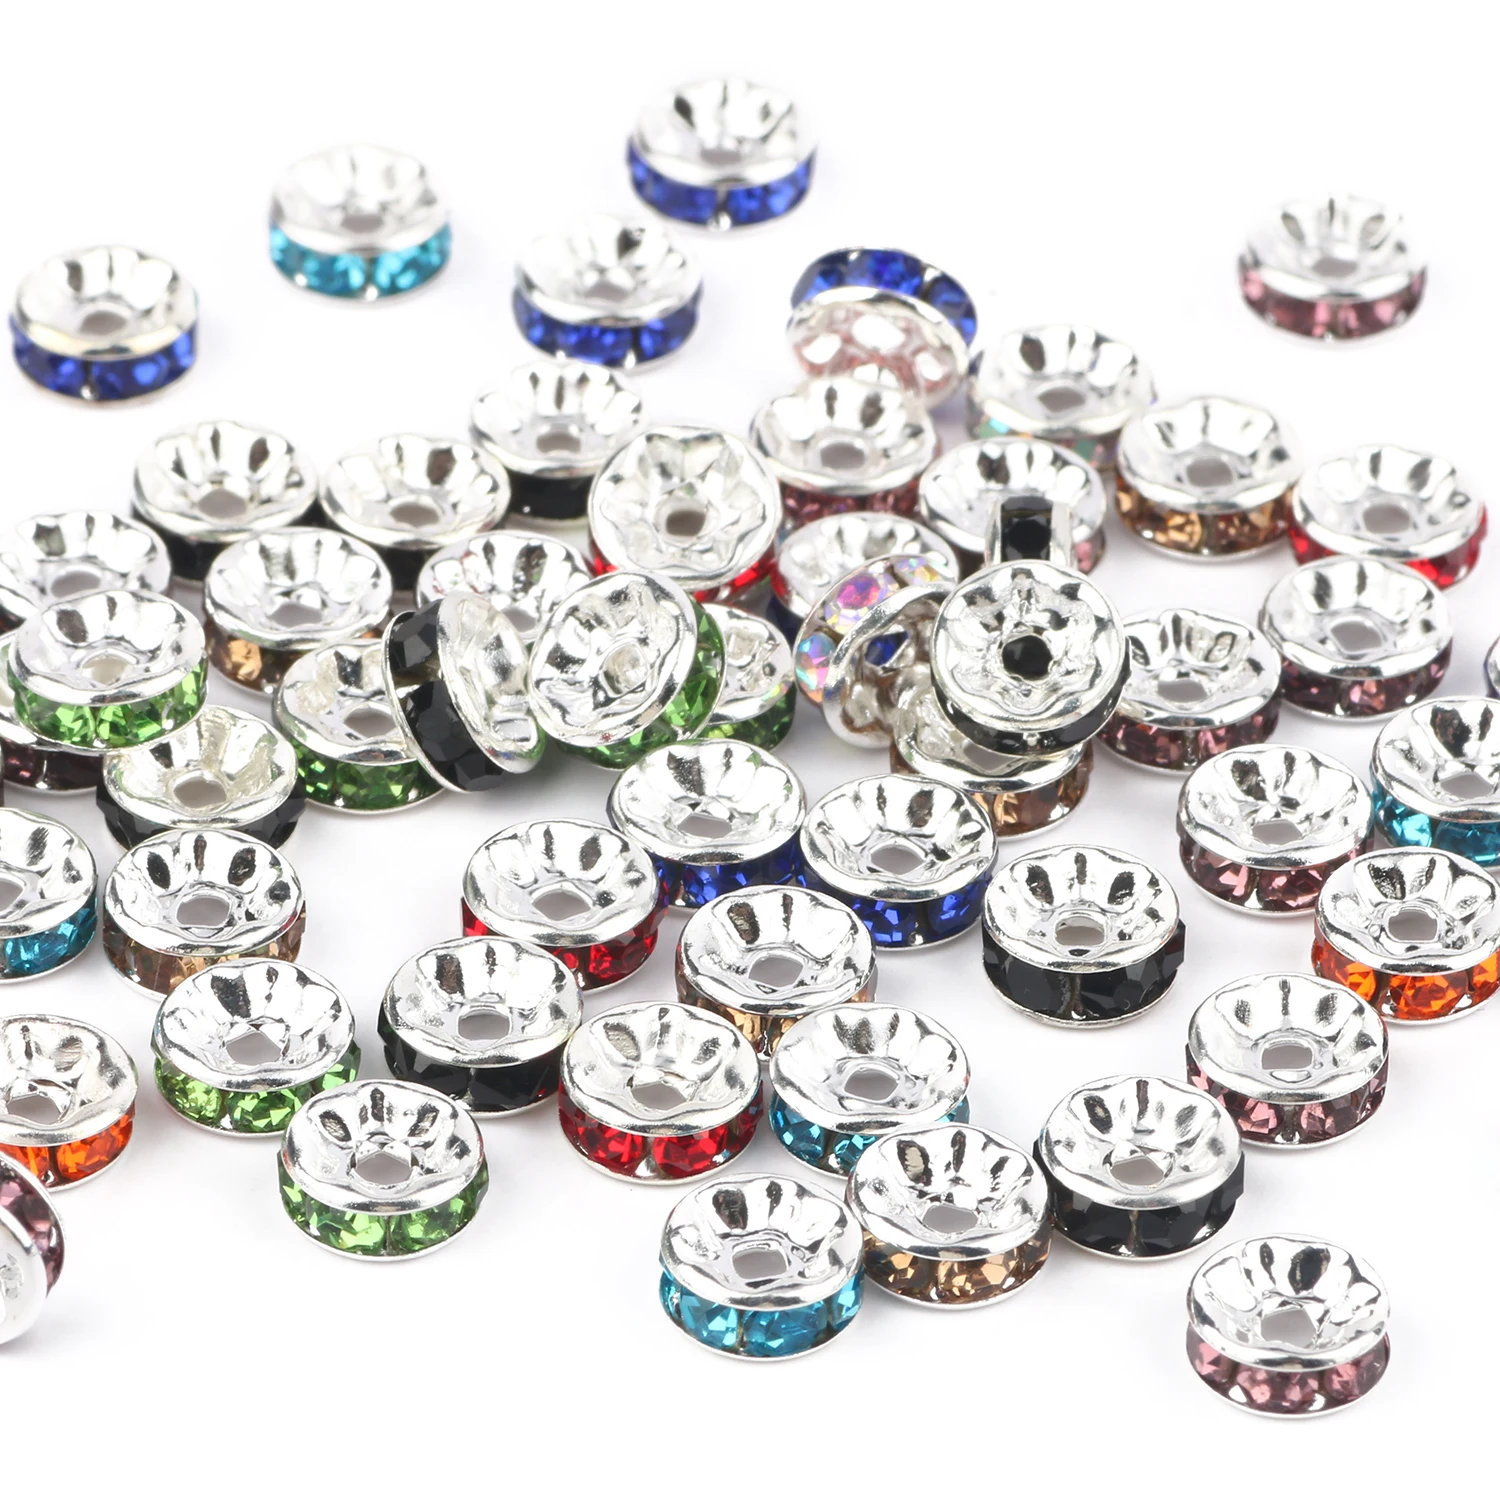 50 unids/lote de cuentas espaciadoras sueltas redondas de cristal para fabricación de joyas, accesorios para pulseras y collares de 4, 6, 8 y 10mm con diamantes de imitación